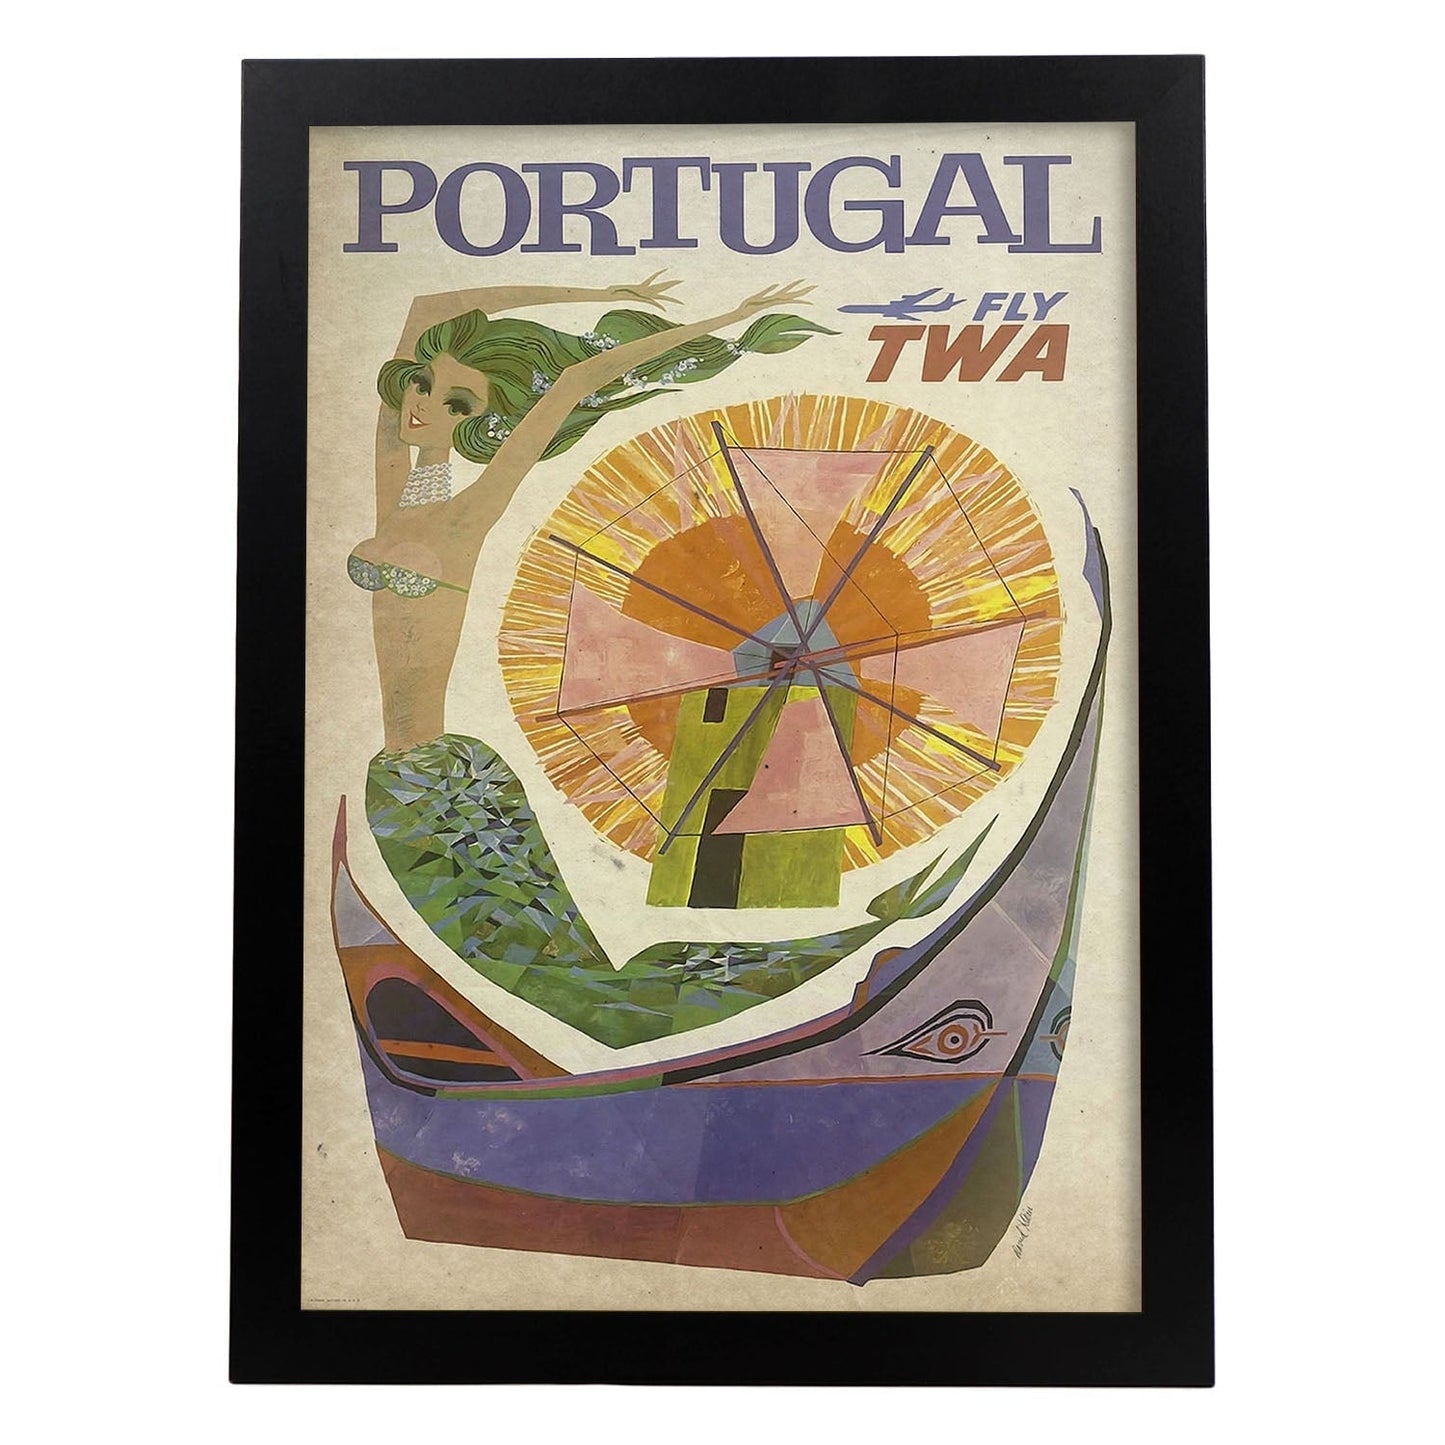 Poster vintage de Portugal. con imágenes vintage y de publicidad antigua.-Artwork-Nacnic-A3-Marco Negro-Nacnic Estudio SL